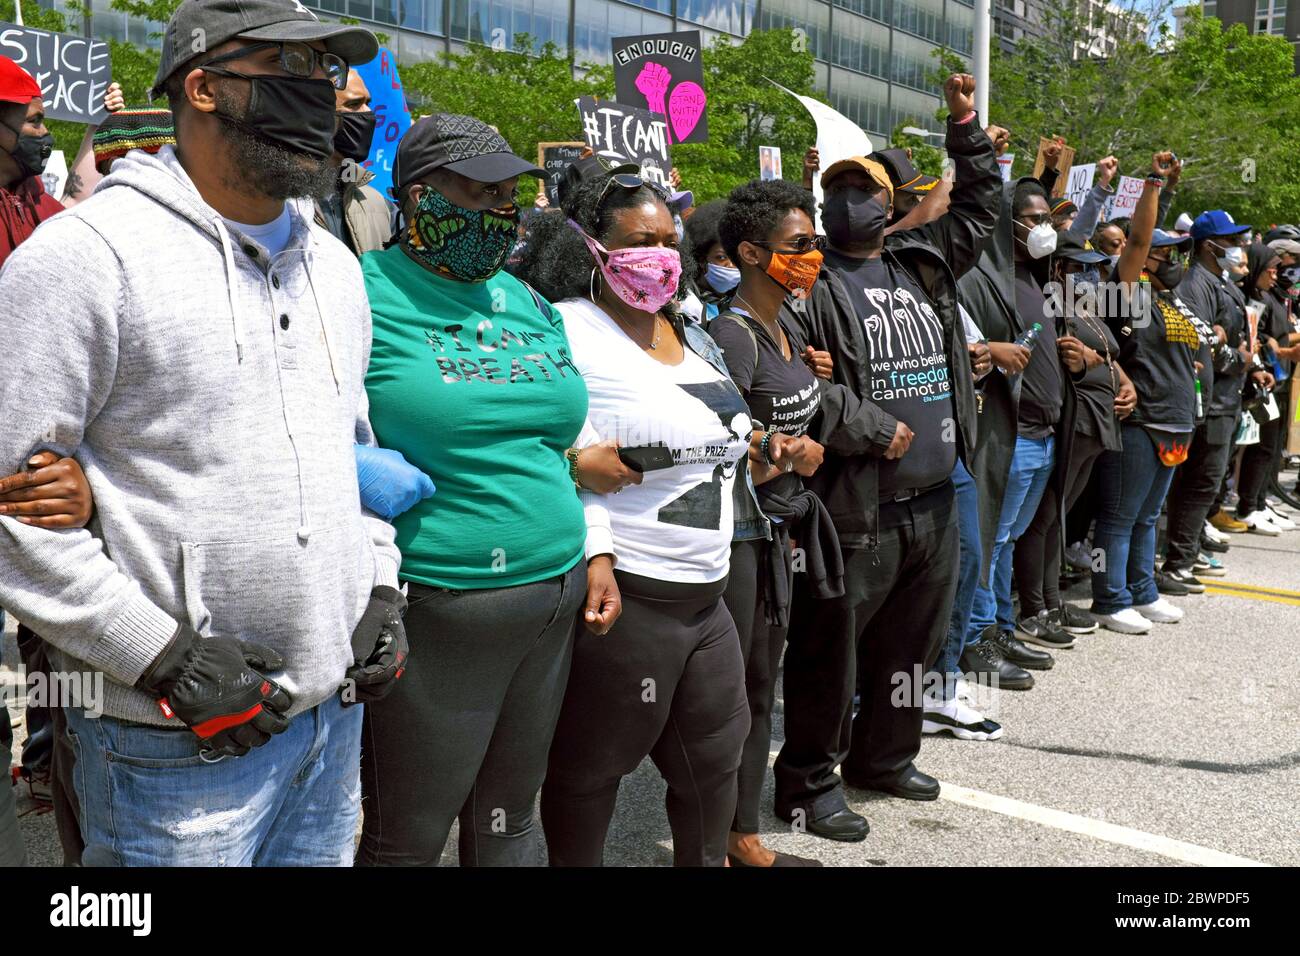 Les armes sont verrouillées alors que les manifestants du mouvement Black Lives Matter se préparent à descendre lakeside Avenue à Cleveland, Ohio, États-Unis. Banque D'Images